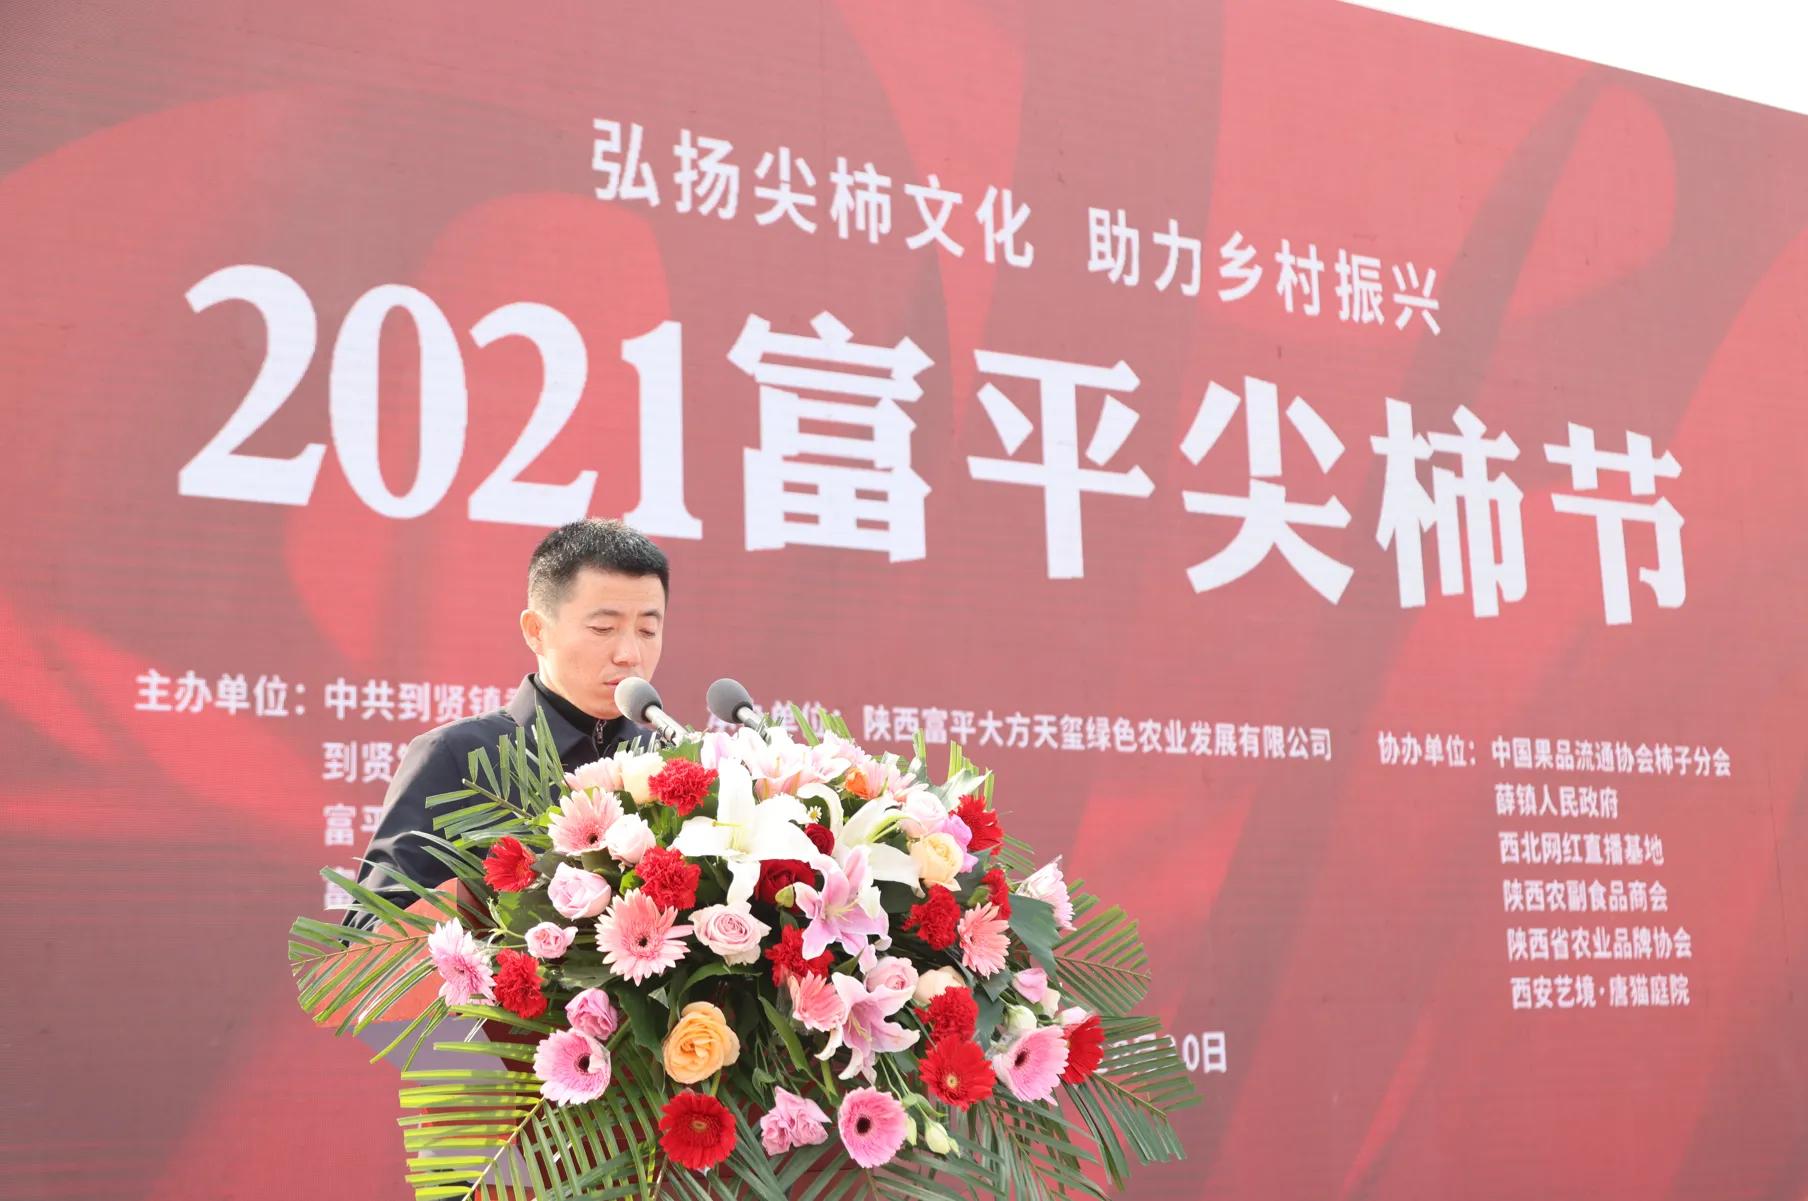 在2021富平尖柿节开幕式现场,富平县政府党组成员詹辉首先就富平支柱